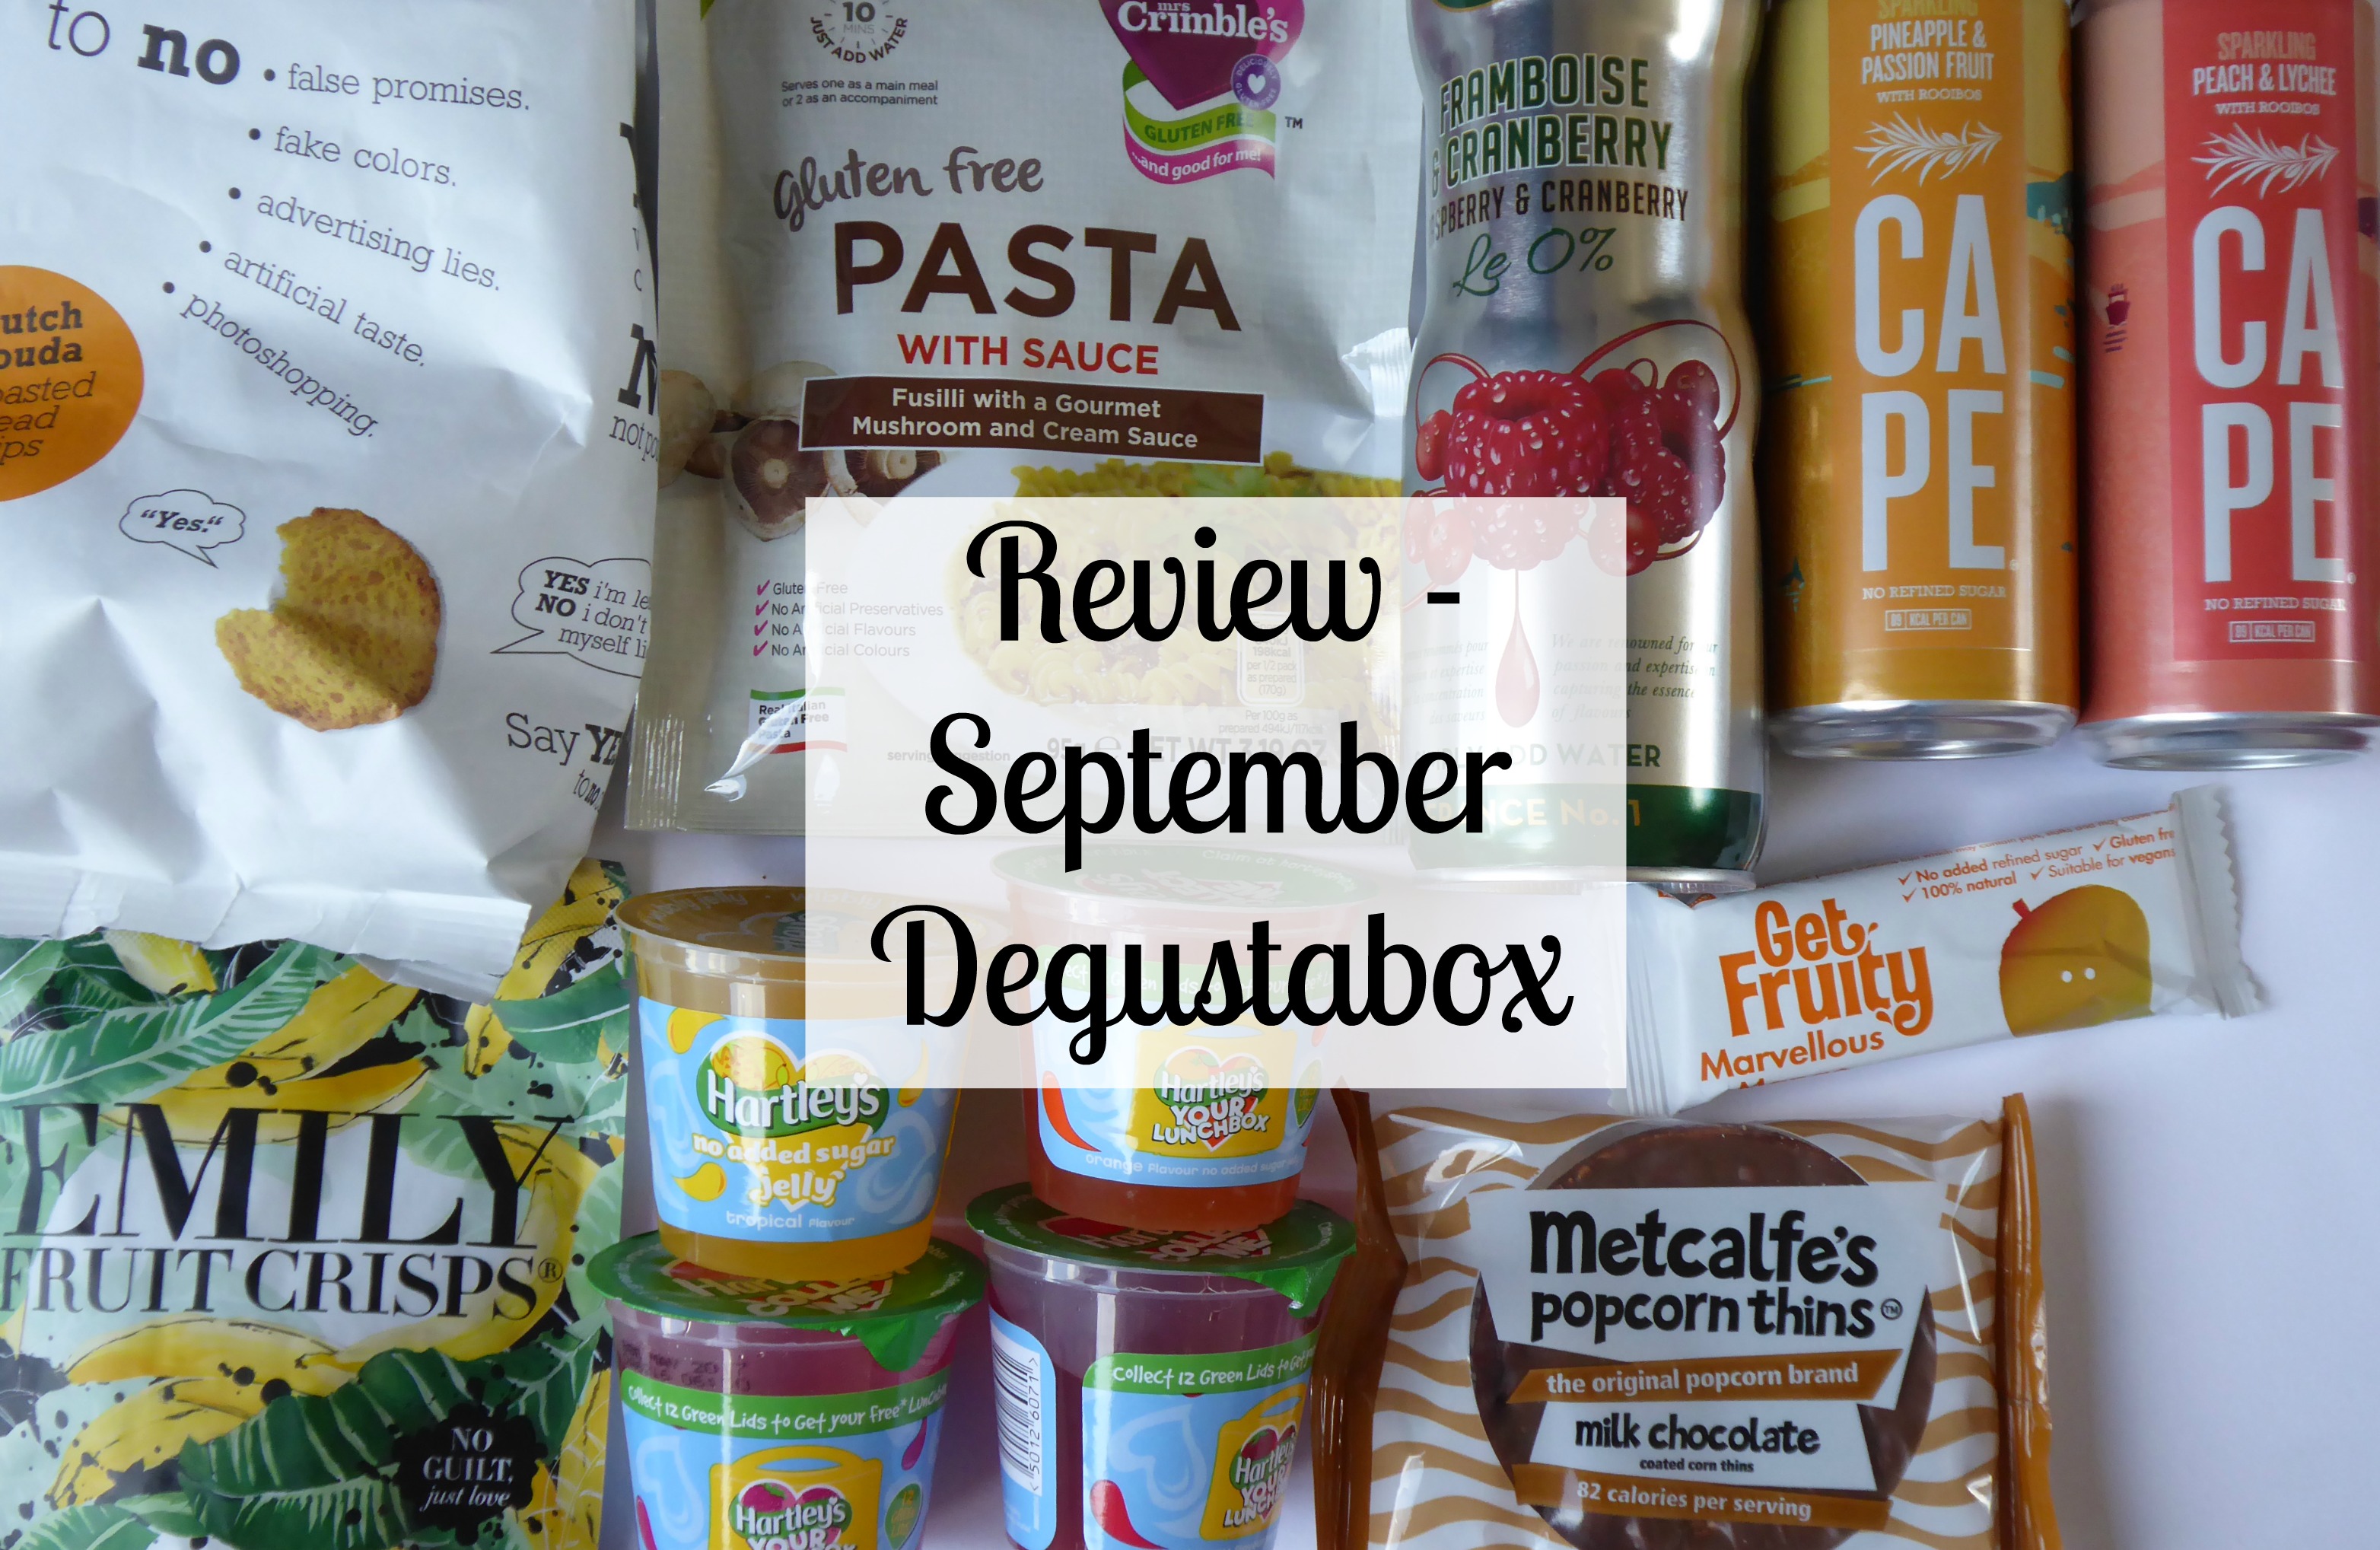 September Degustabox review